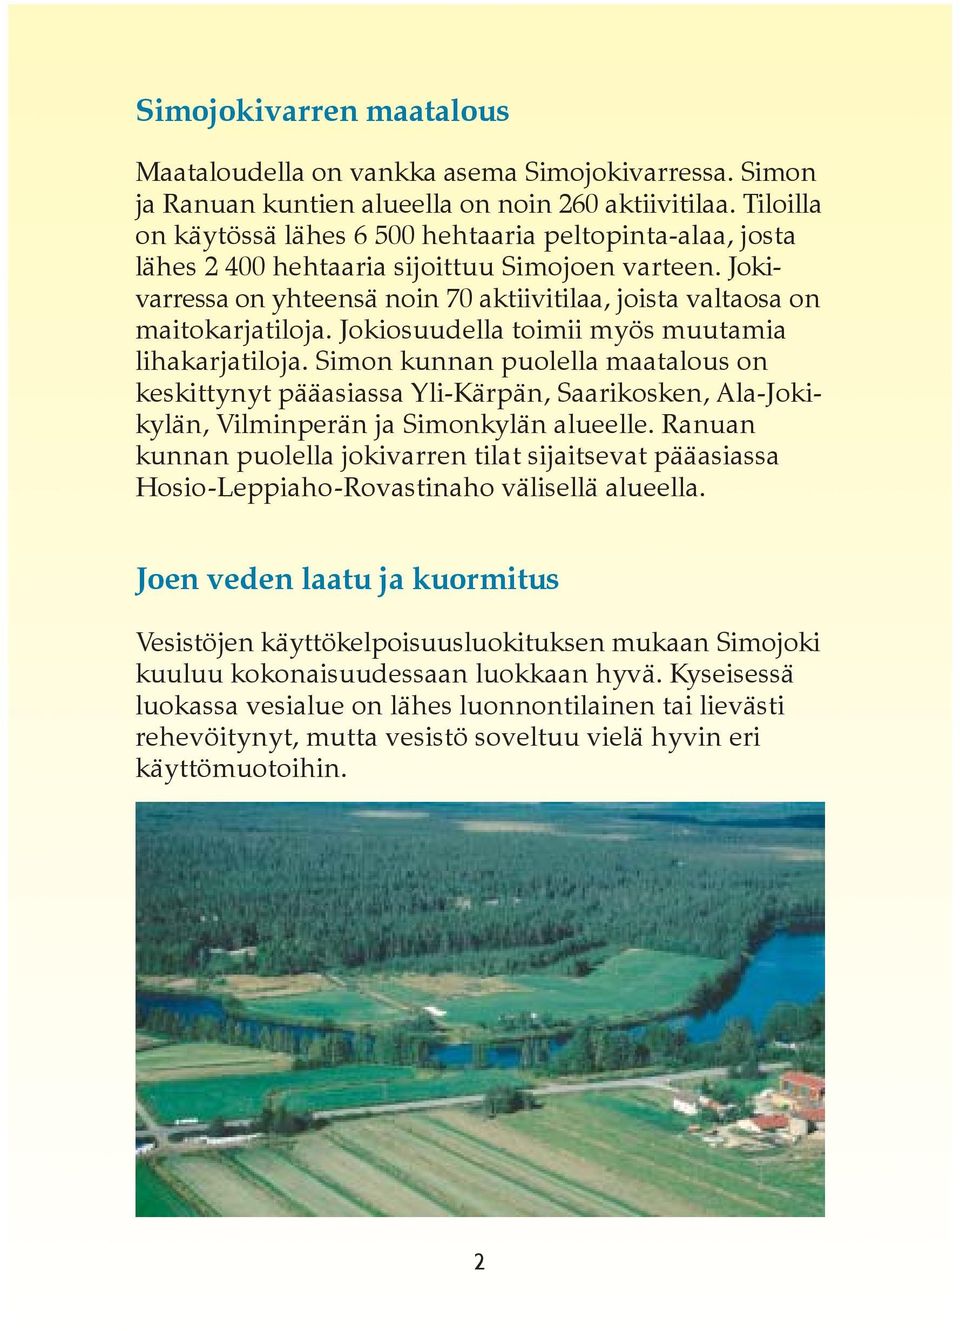 Jokiosuudella toimii myös muutamia lihakarjatiloja. Simon kunnan puolella maatalous on keskittynyt pääasiassa Yli-Kärpän, Saarikosken, Ala-Jokikylän, Vilminperän ja Simonkylän alueelle.